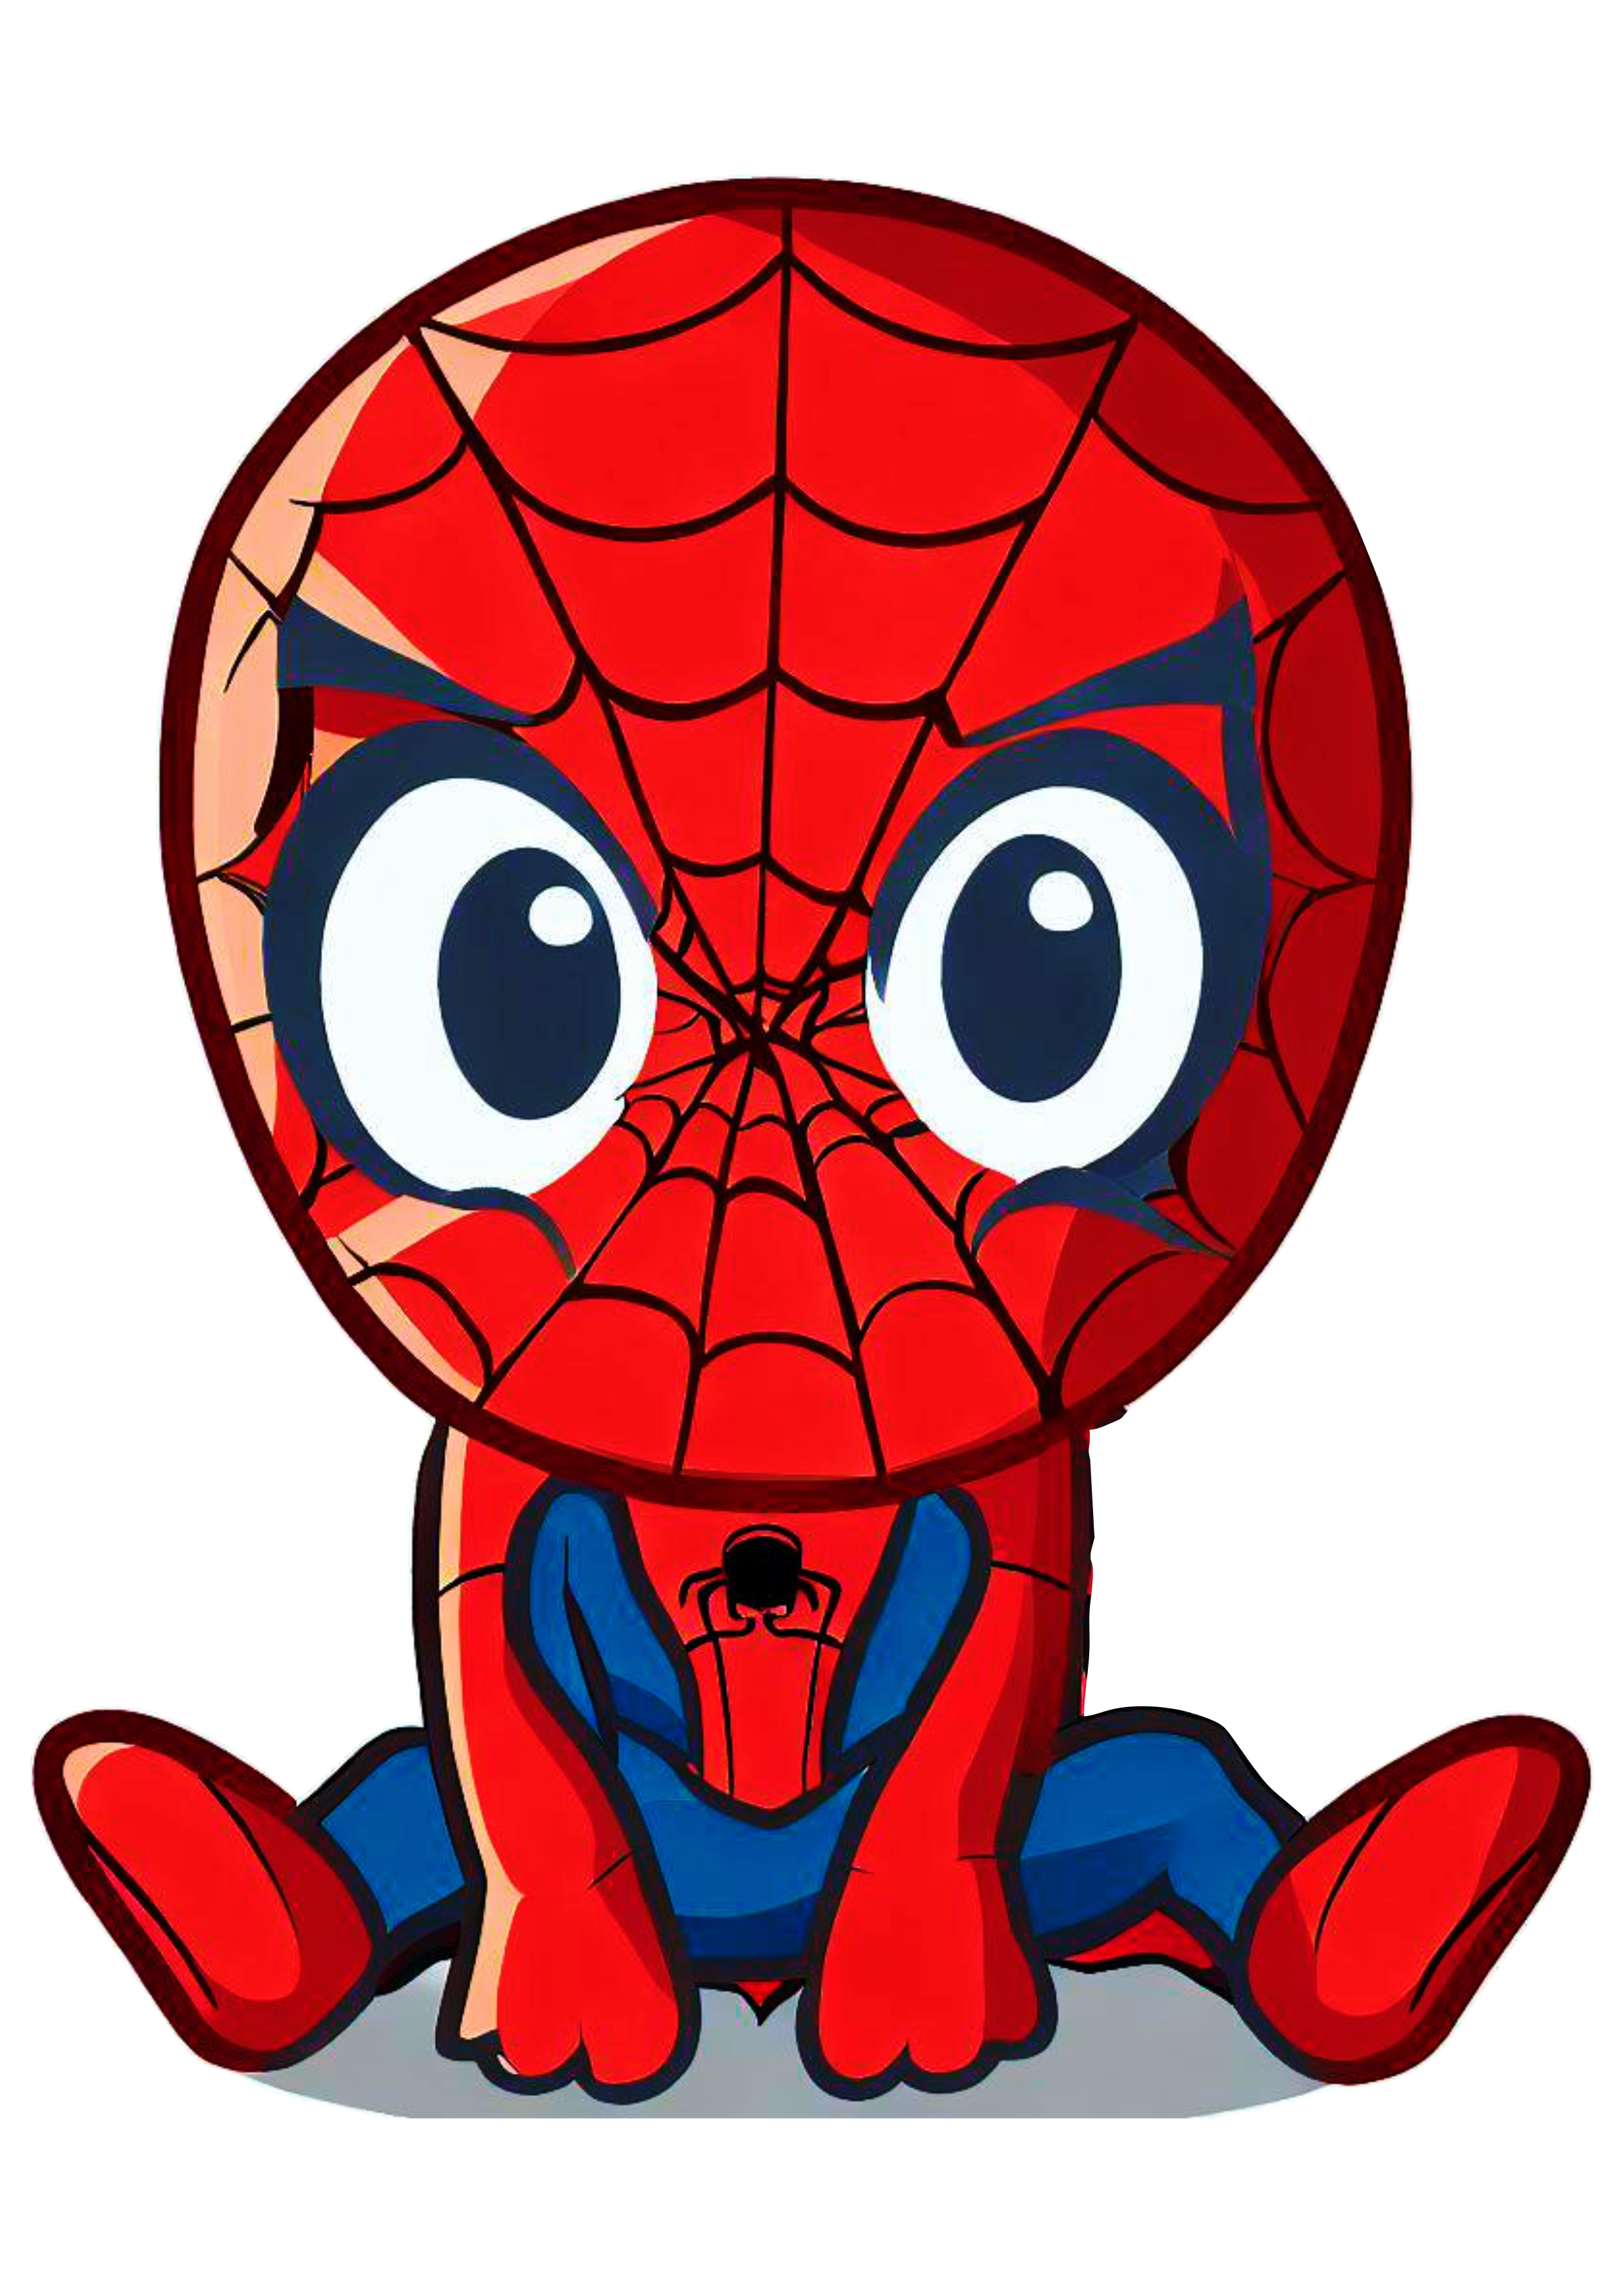 Homem aranha cute spider man ultimate baby ilustração universo Marvel fantasia infantil png